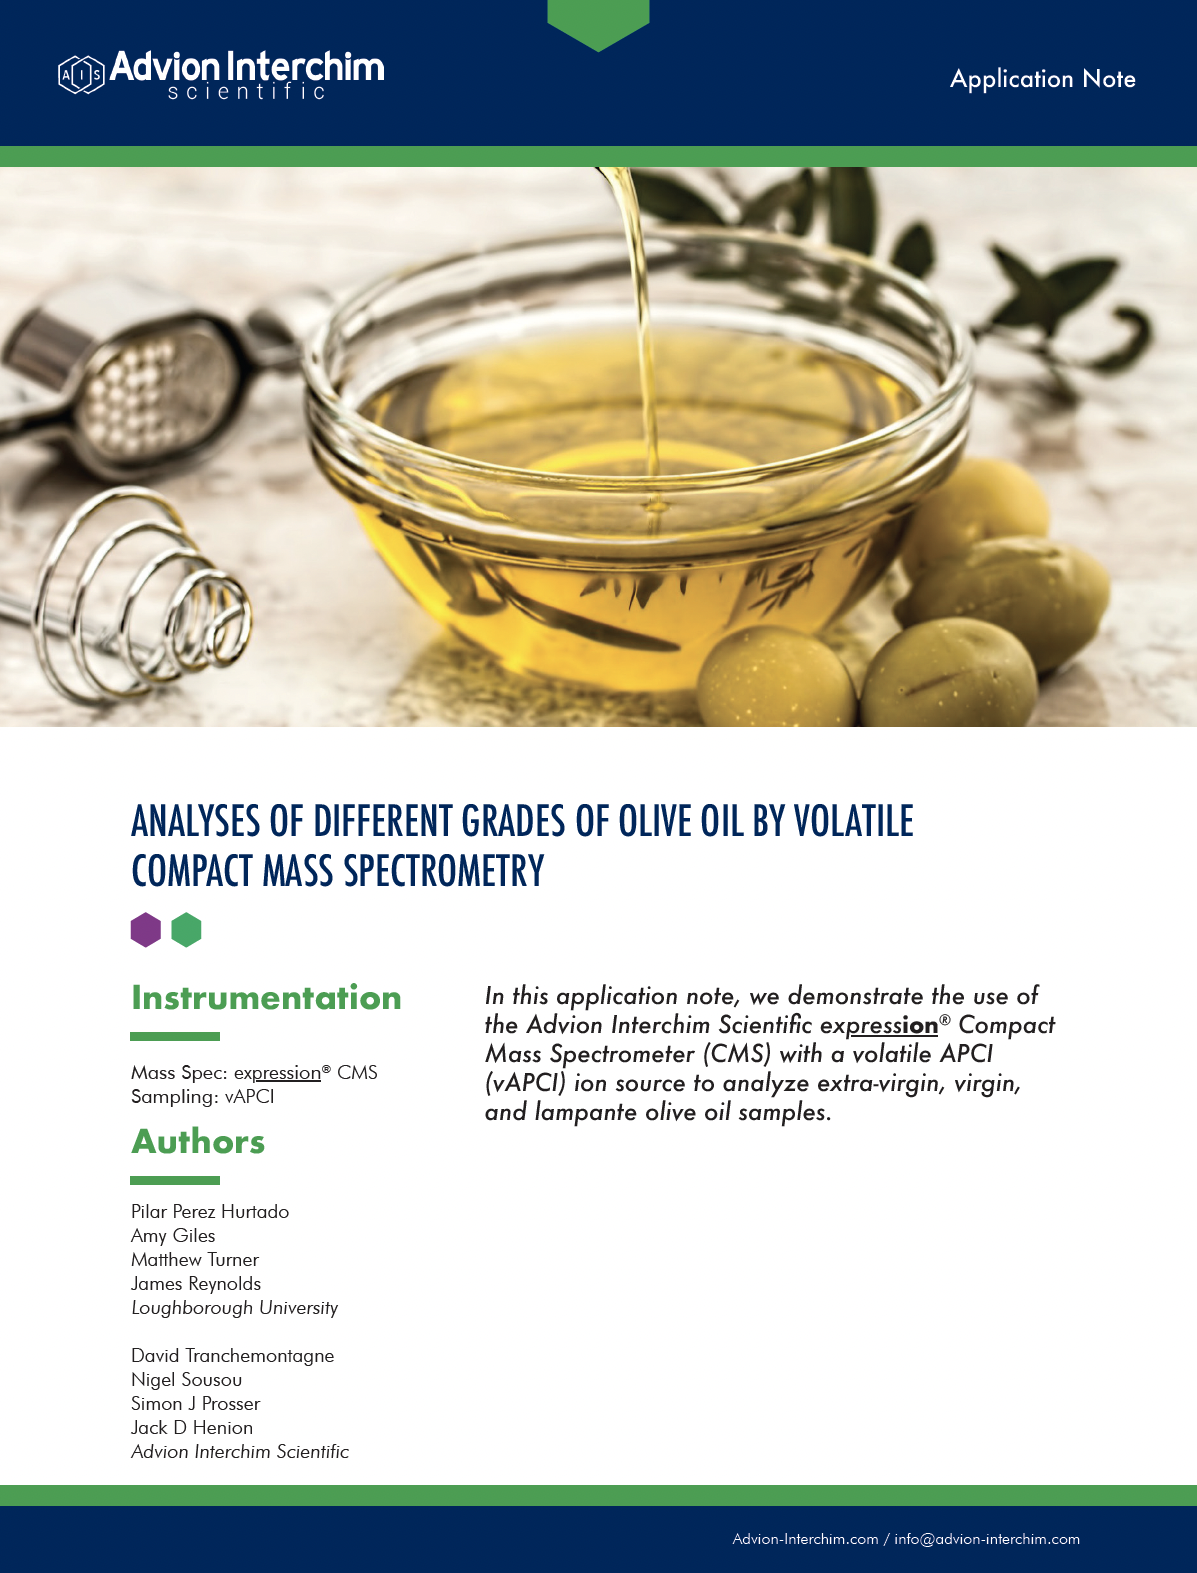 Analyses de différentes qualités d'huile d'olive par spectrométrie de masse volatile